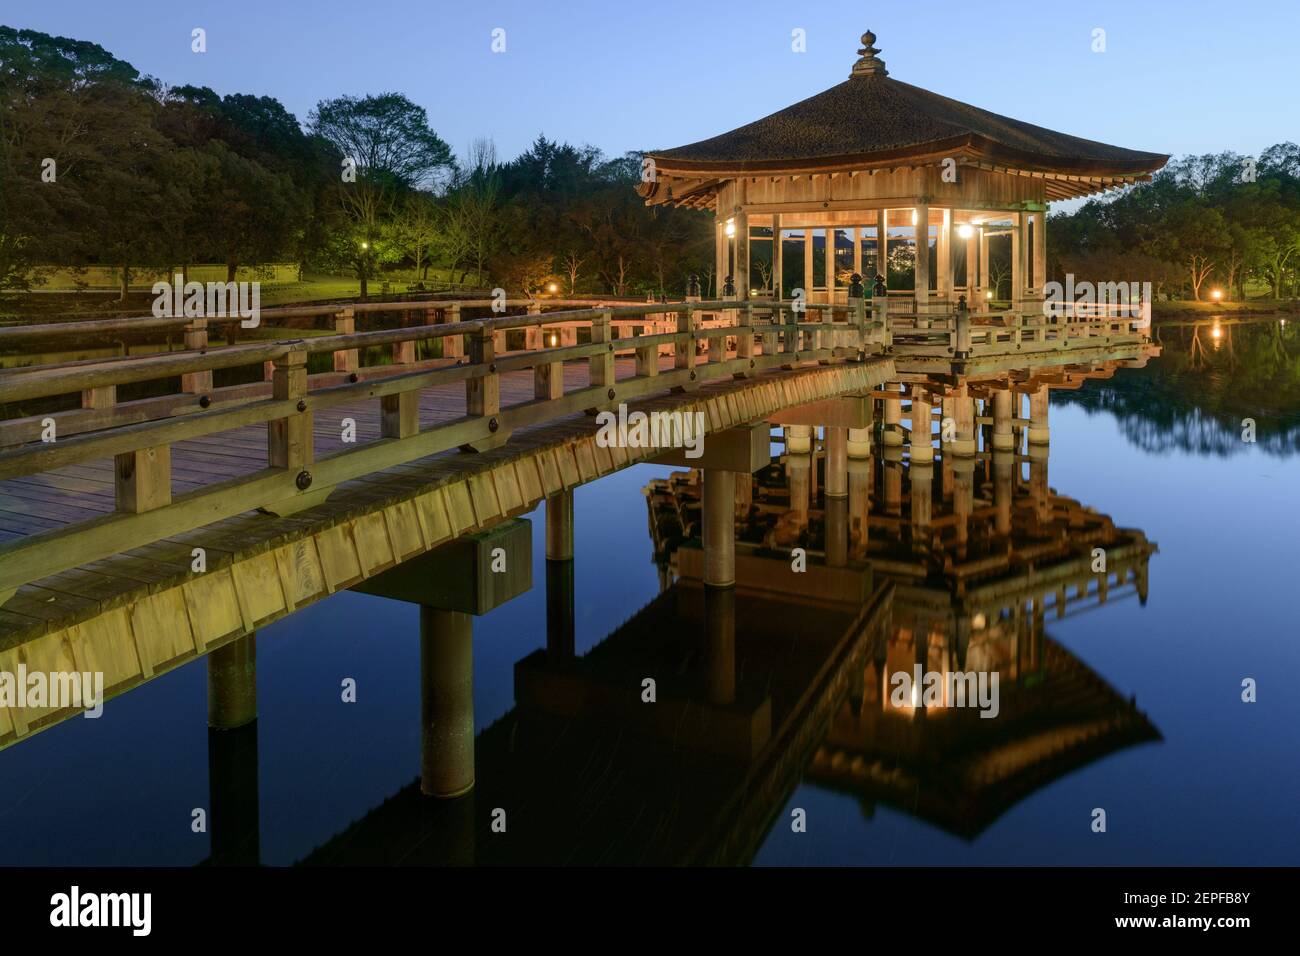 The Ukimido Pavilion Gazebo illuminated at dusk in Nara, Japan. Stock Photo